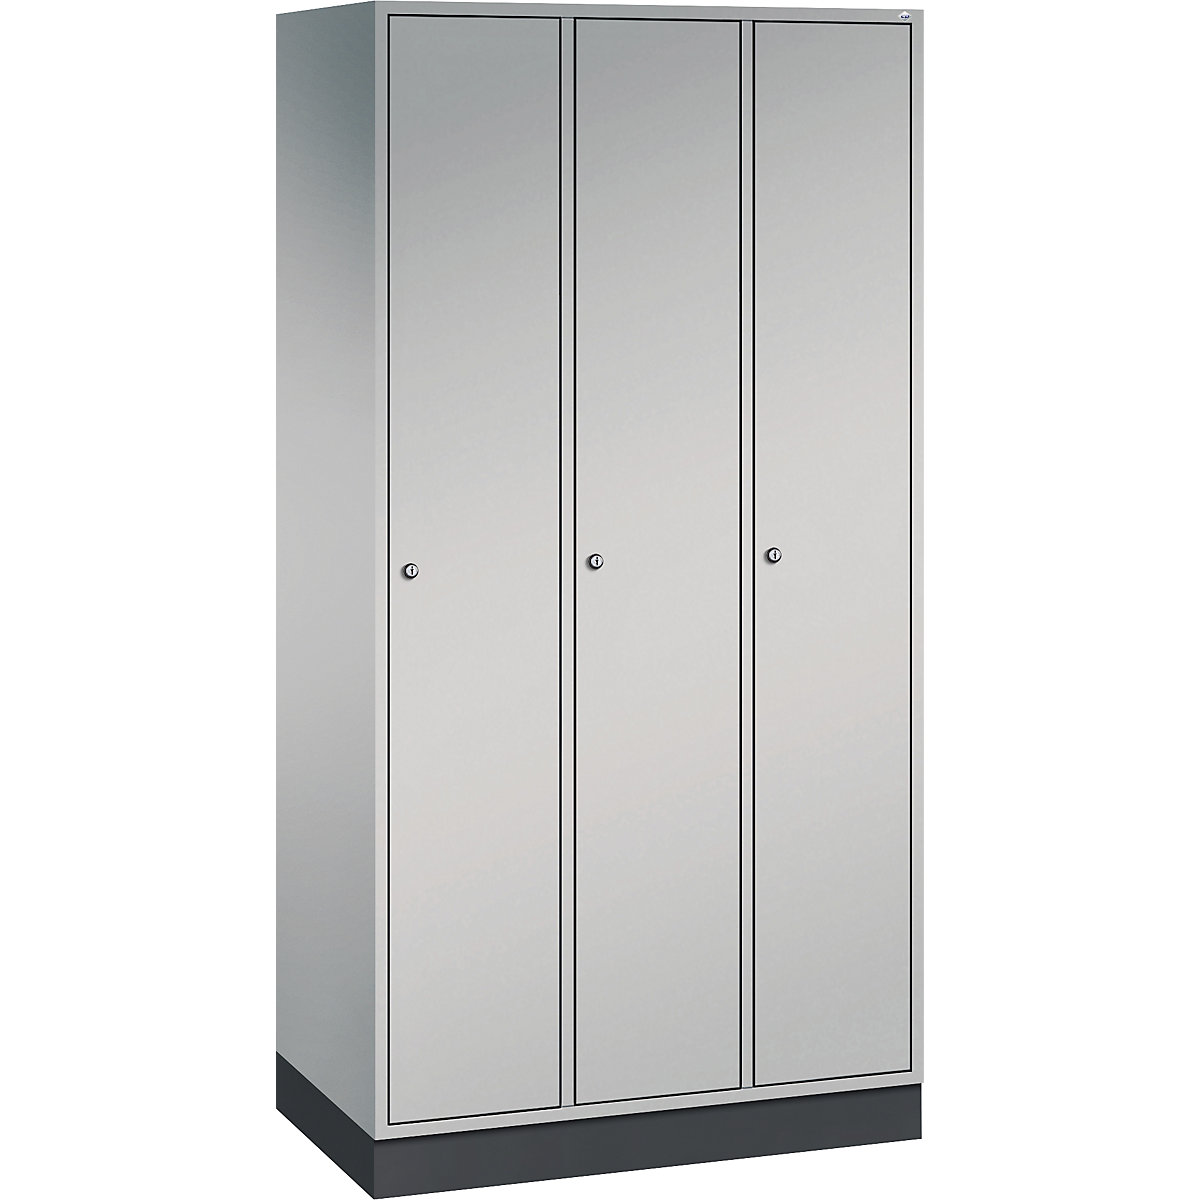 INTRO stalen garderobekast – C+P, breedte 920 mm, 3 afdelingen, kastframe blank aluminiumkleurig, deuren blank aluminiumkleurig-5